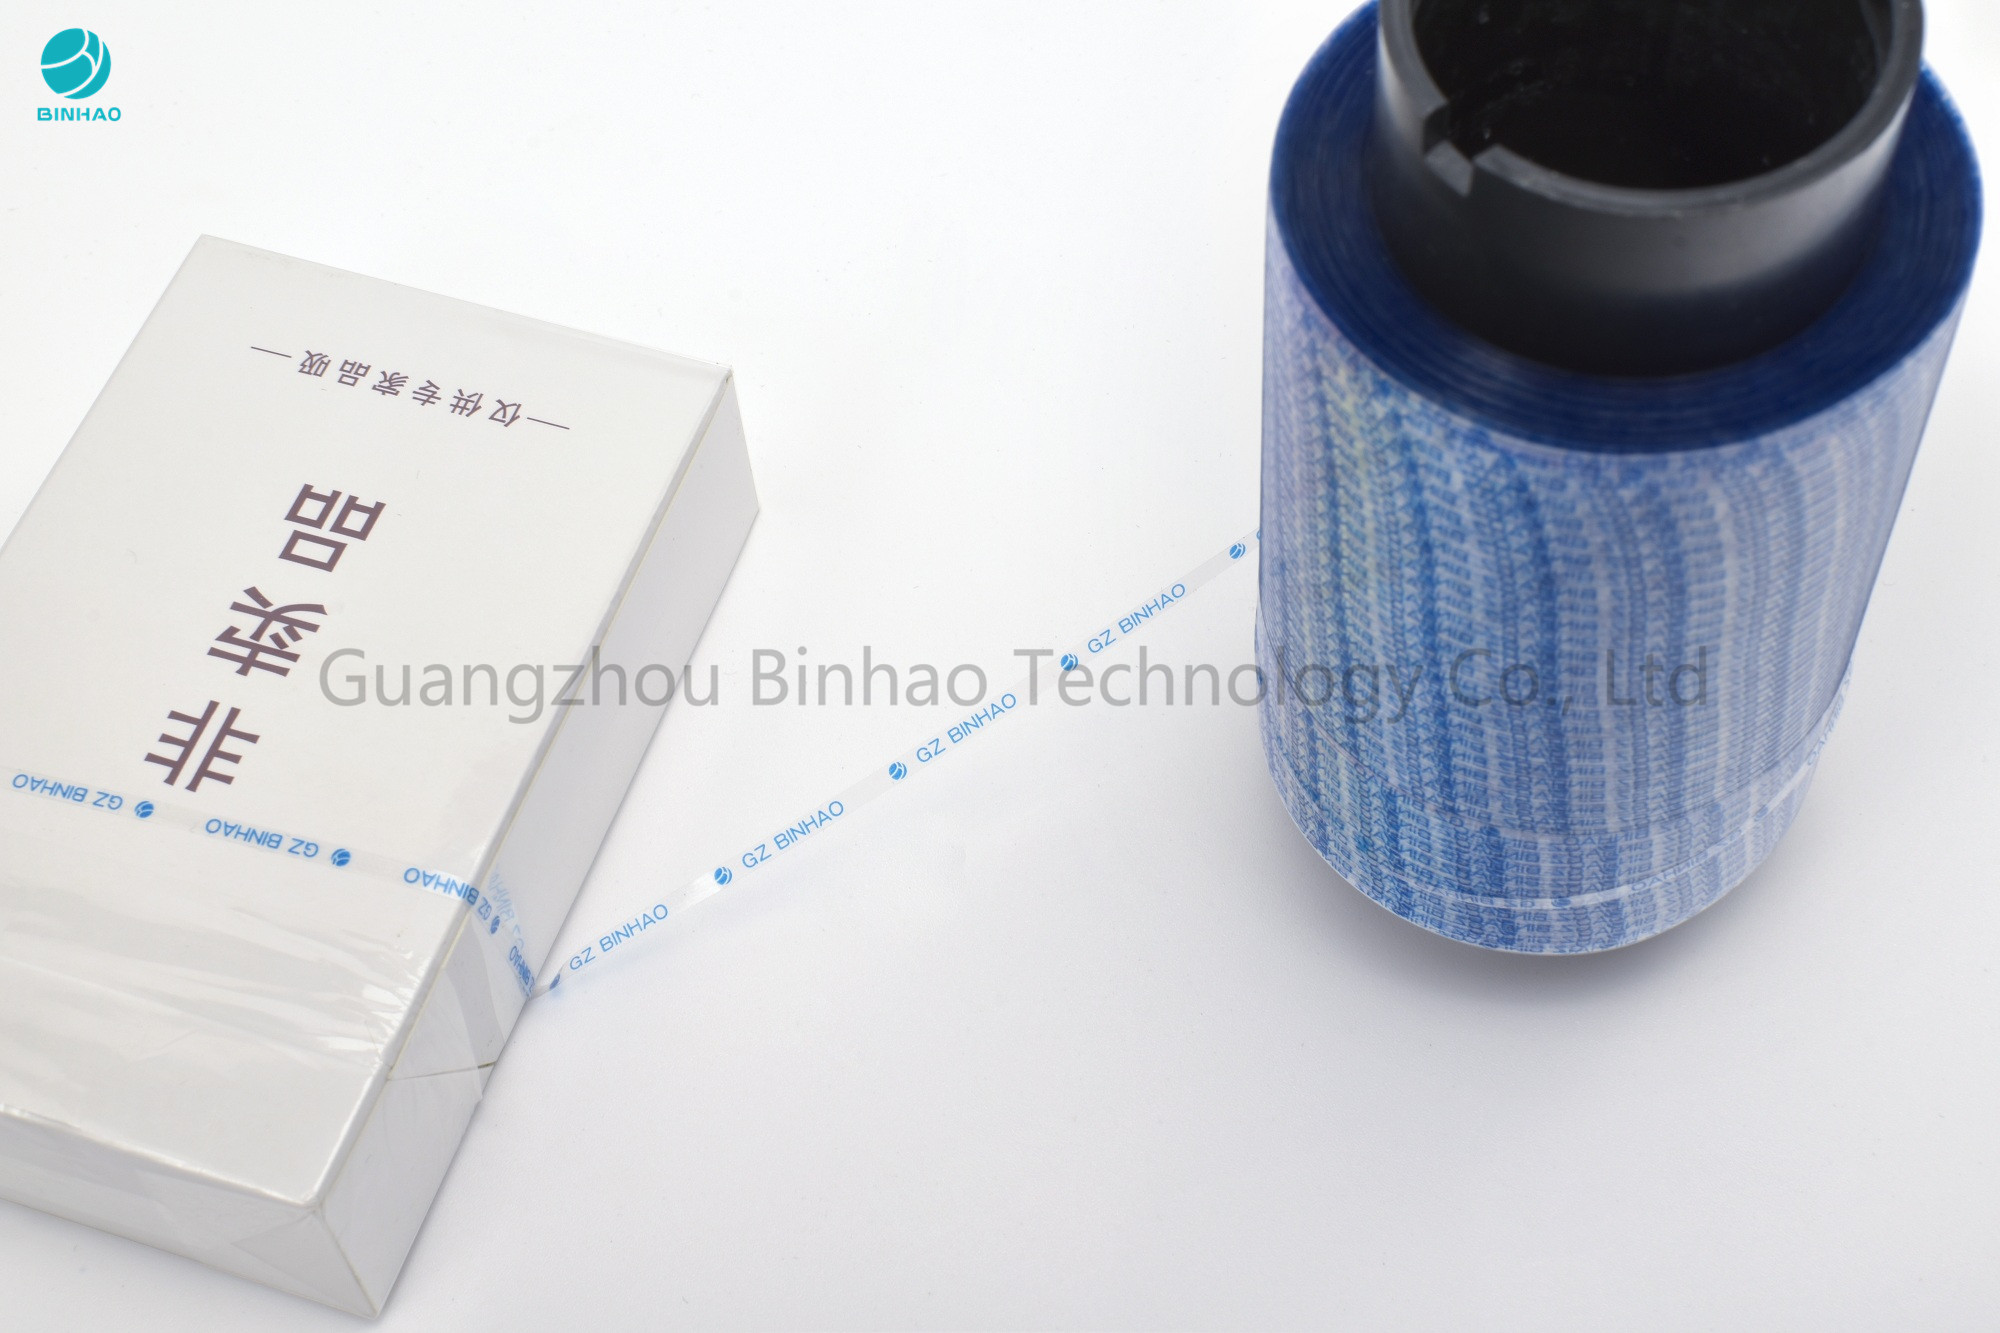 Riss-Streifen-Band Binhao neues Superfine 1.6mm blaues ganz eigenhändig geschriebes mit selbstklebenden multi Farben gedruckt